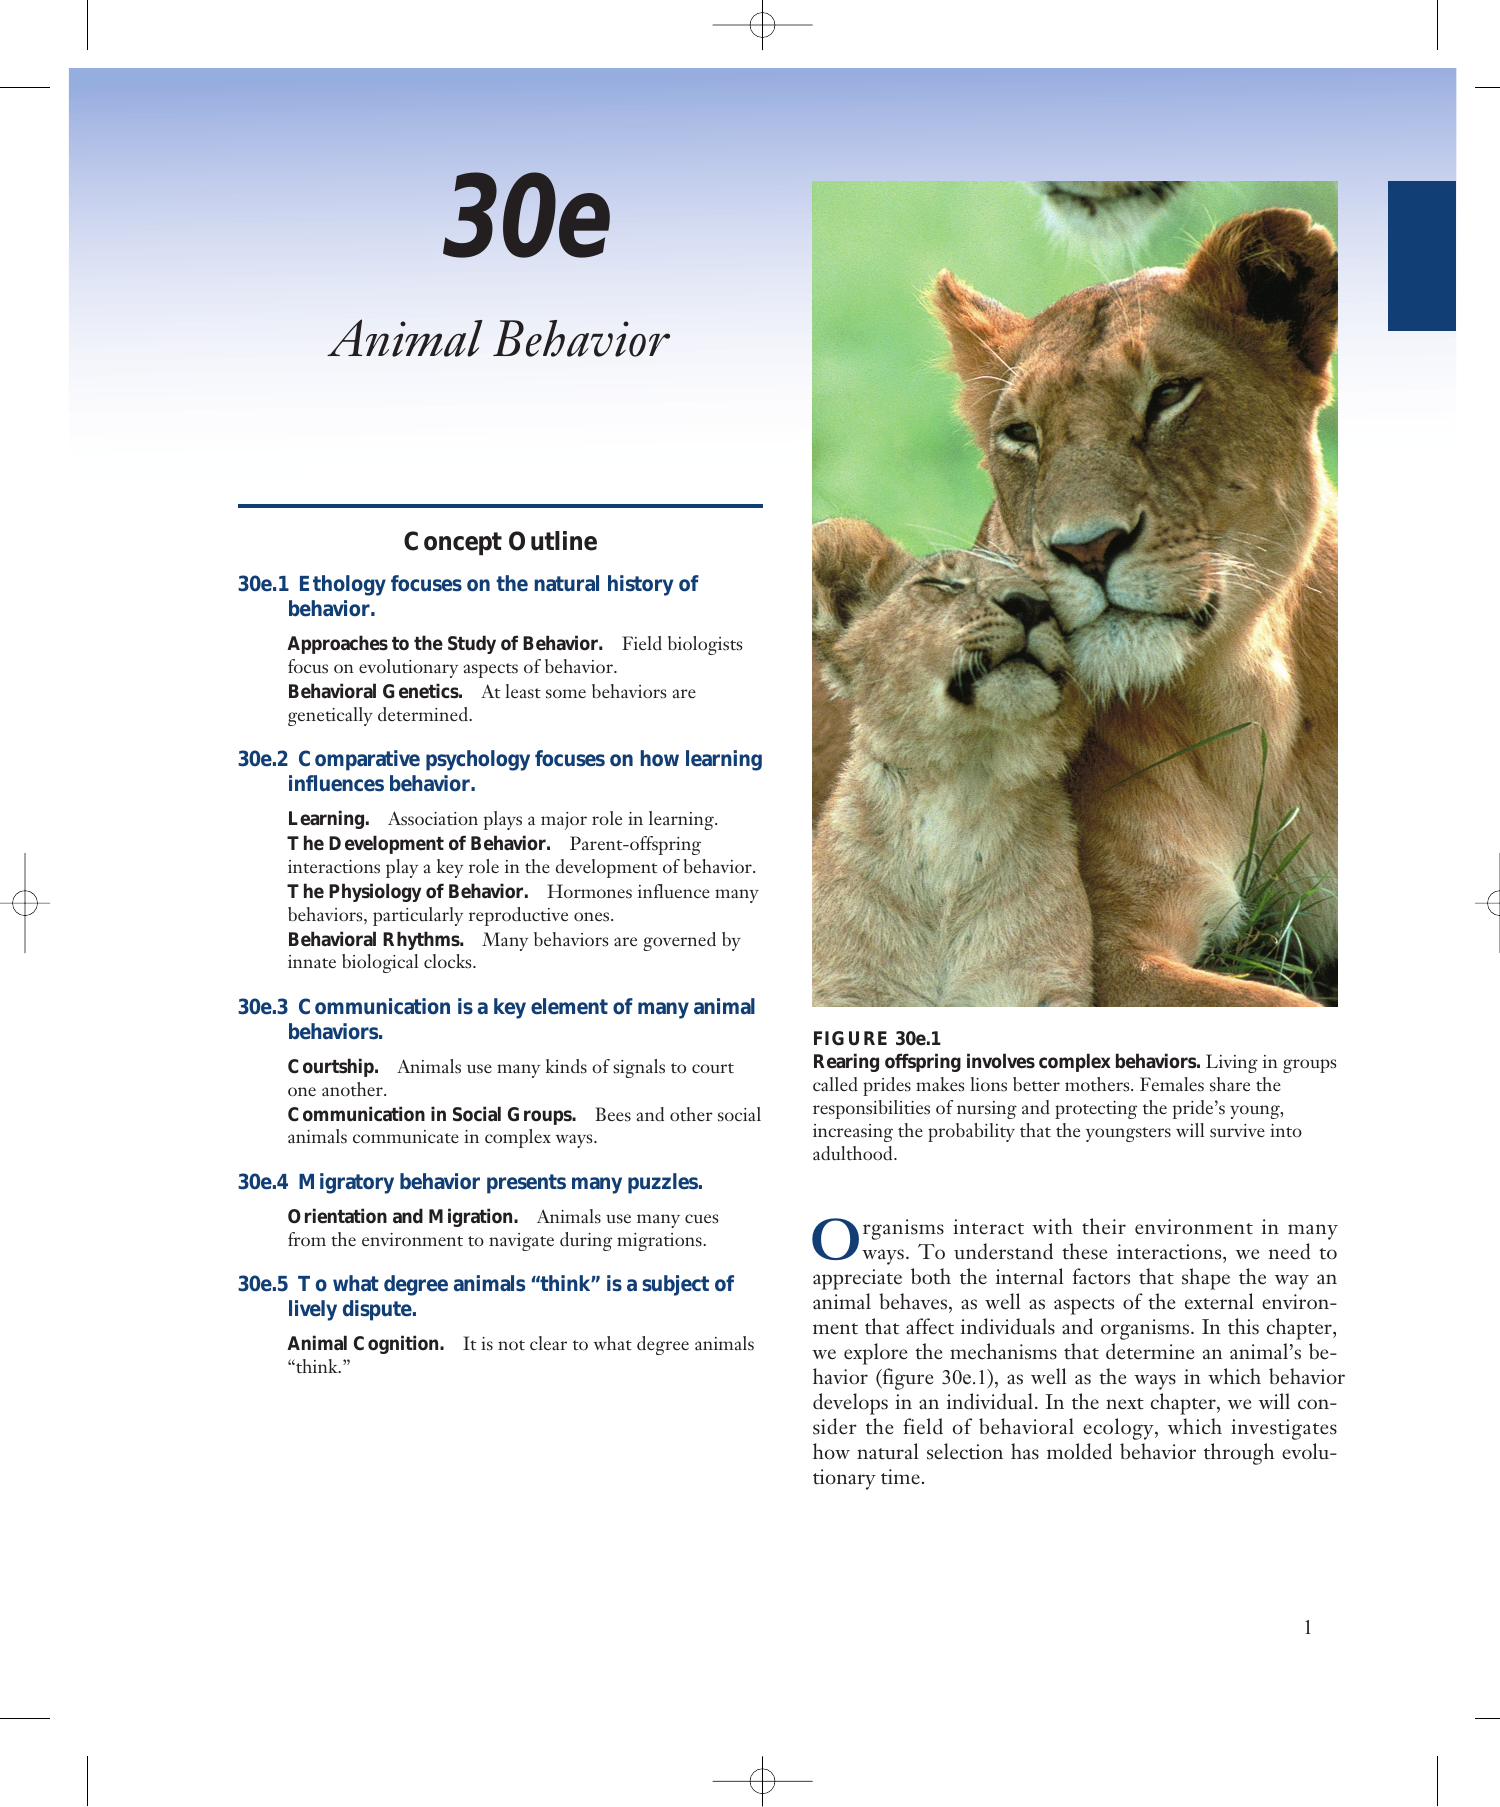 Chapter 30e: Animal Behavior